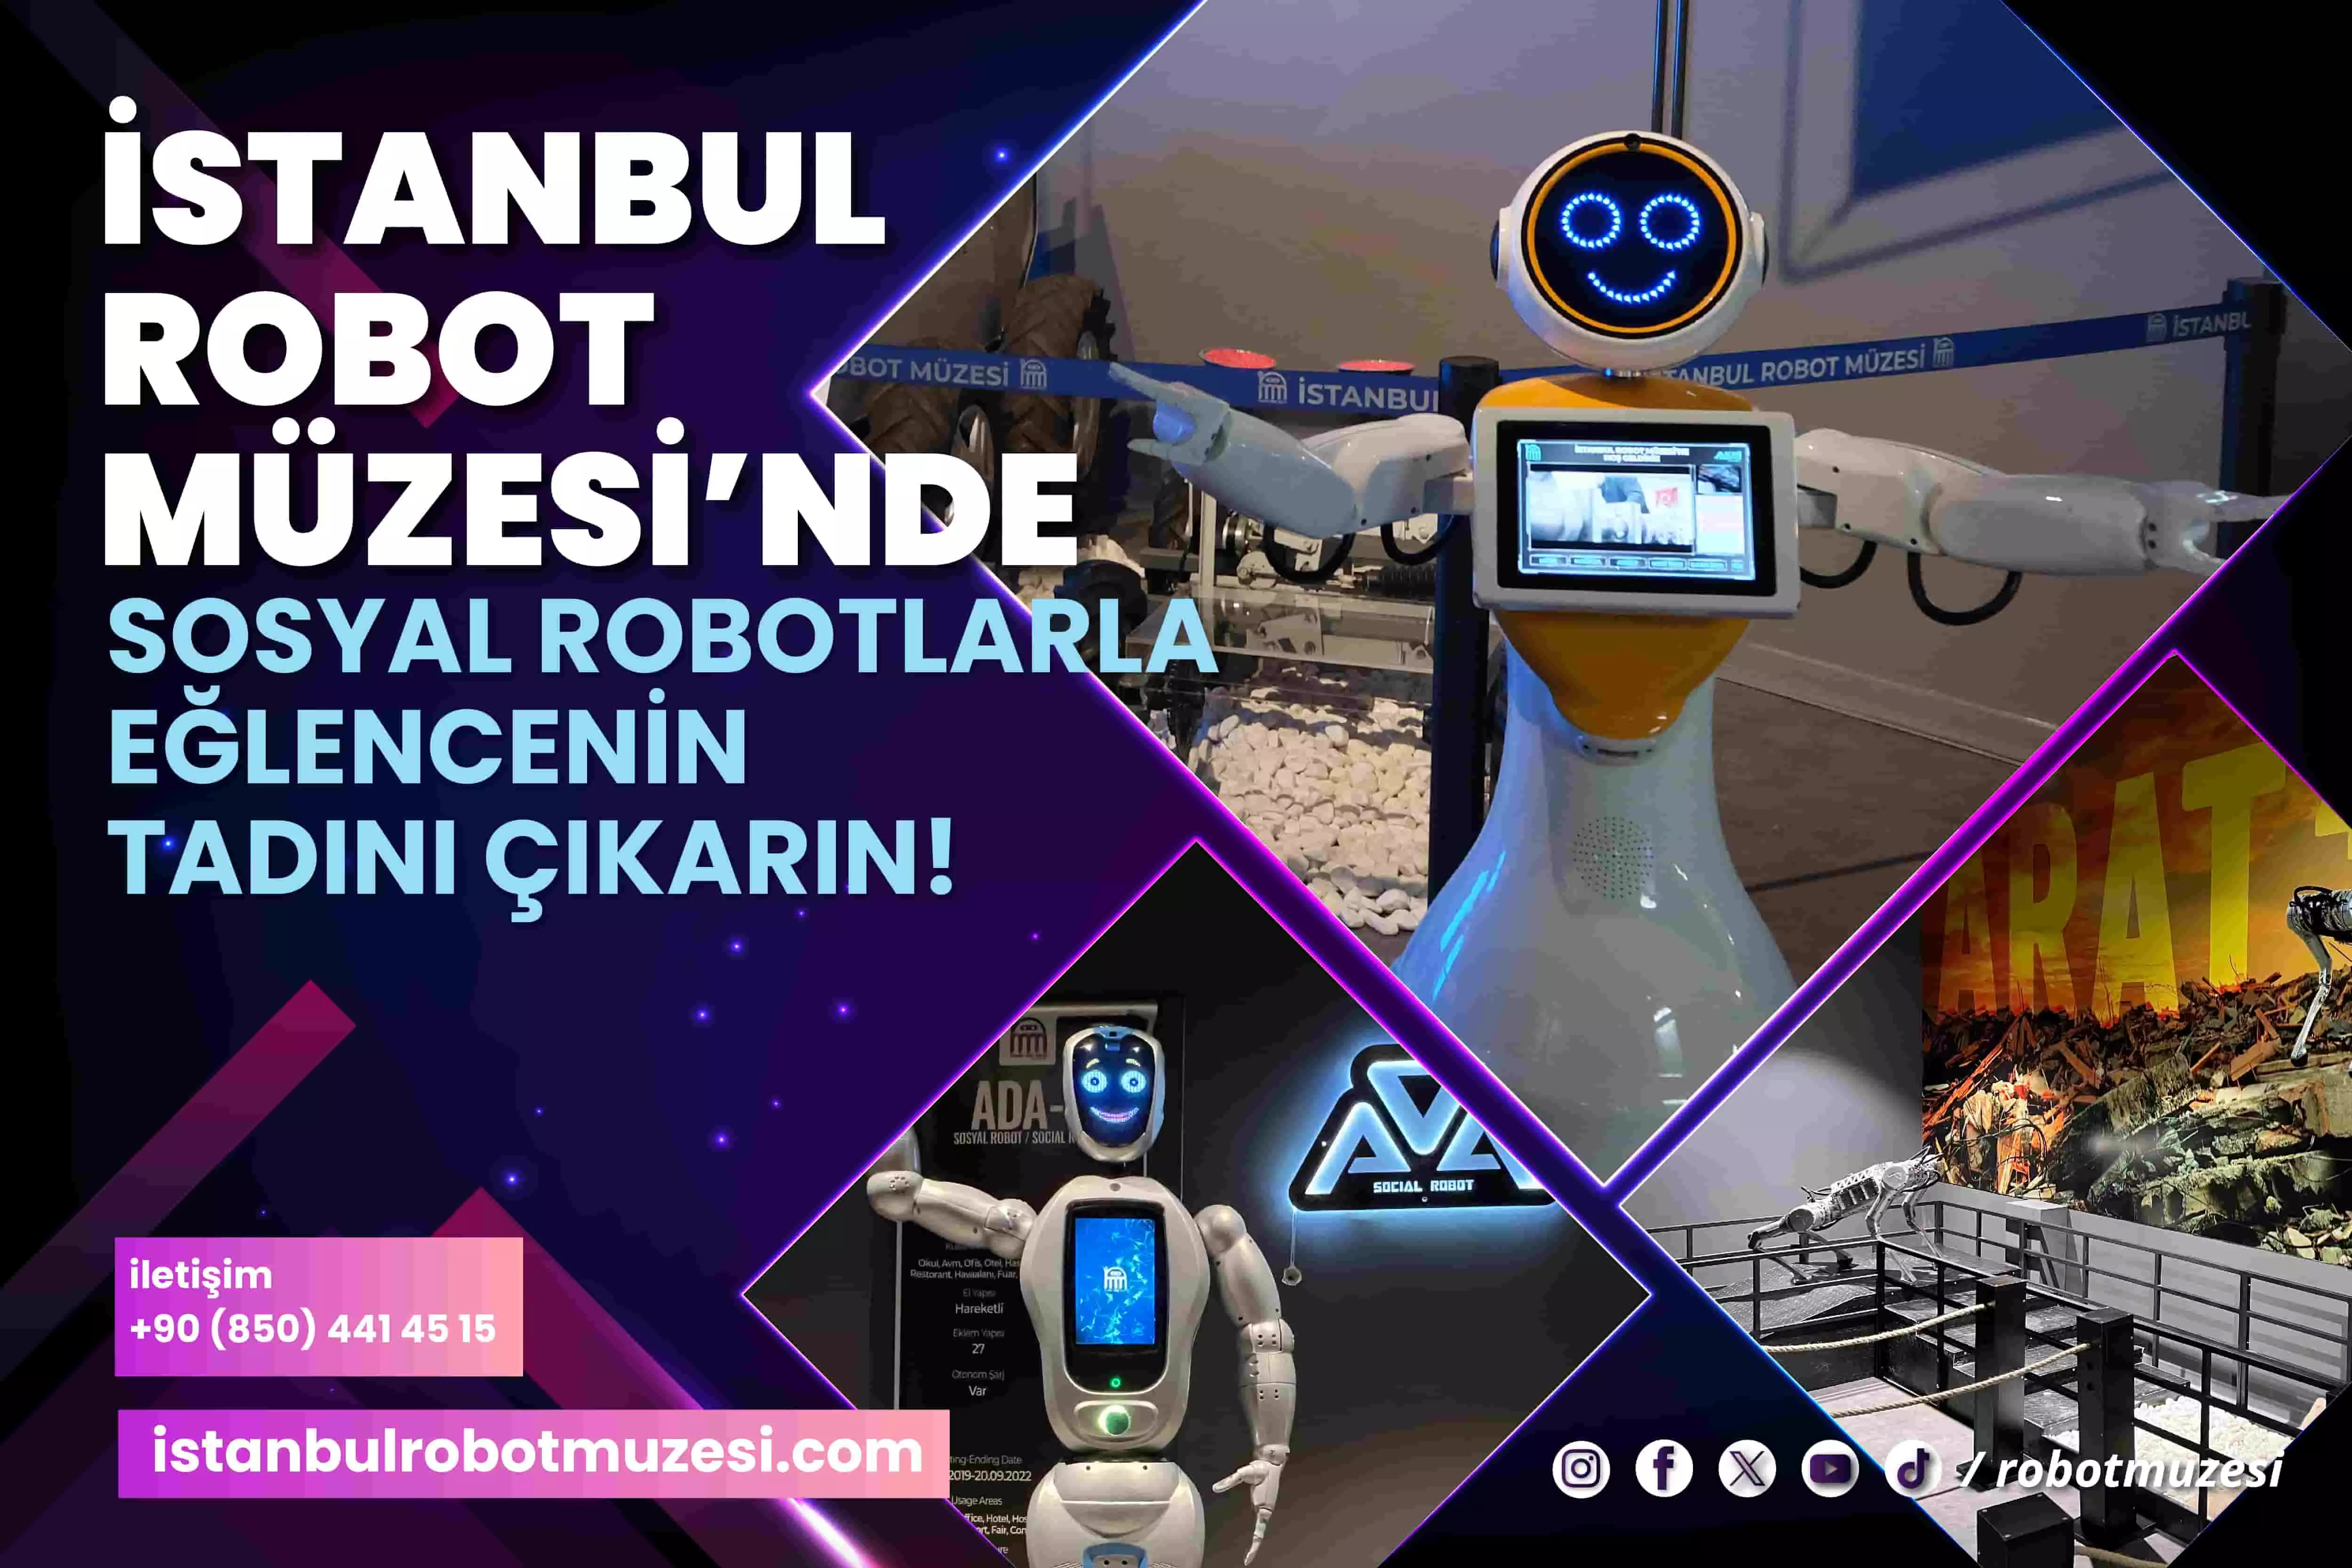 Μουσείο Ρομπότ της Κωνσταντινούπολης Εισιτήριο - 7